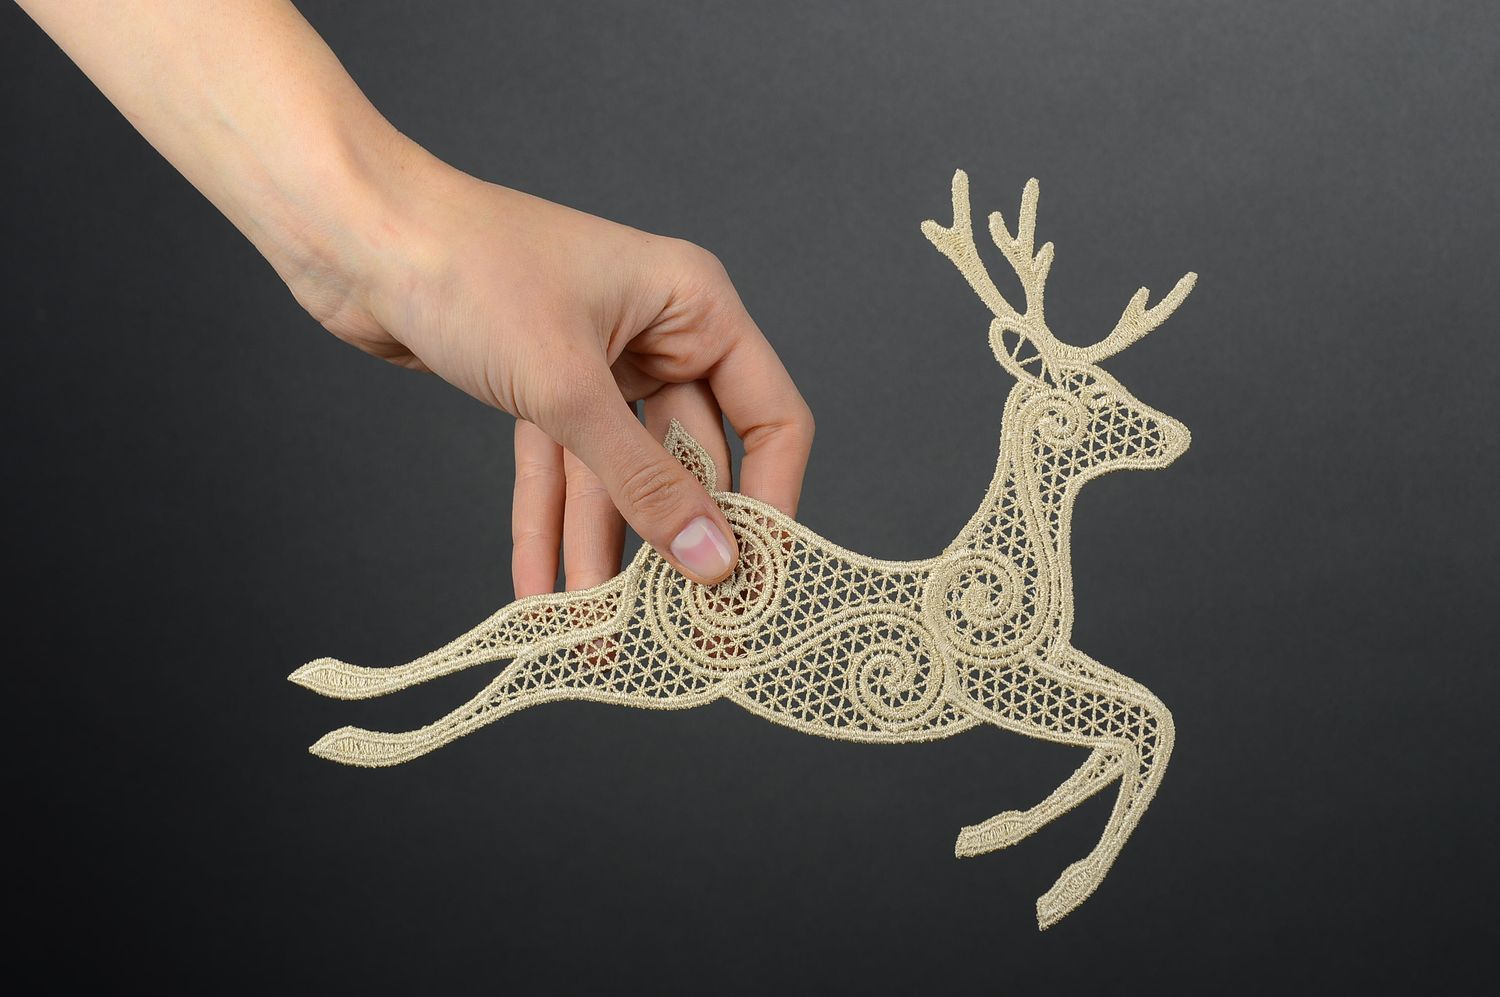 Adorno navideño hecho a mano elemento decorativo juguete para Navidad Ciervo foto 2